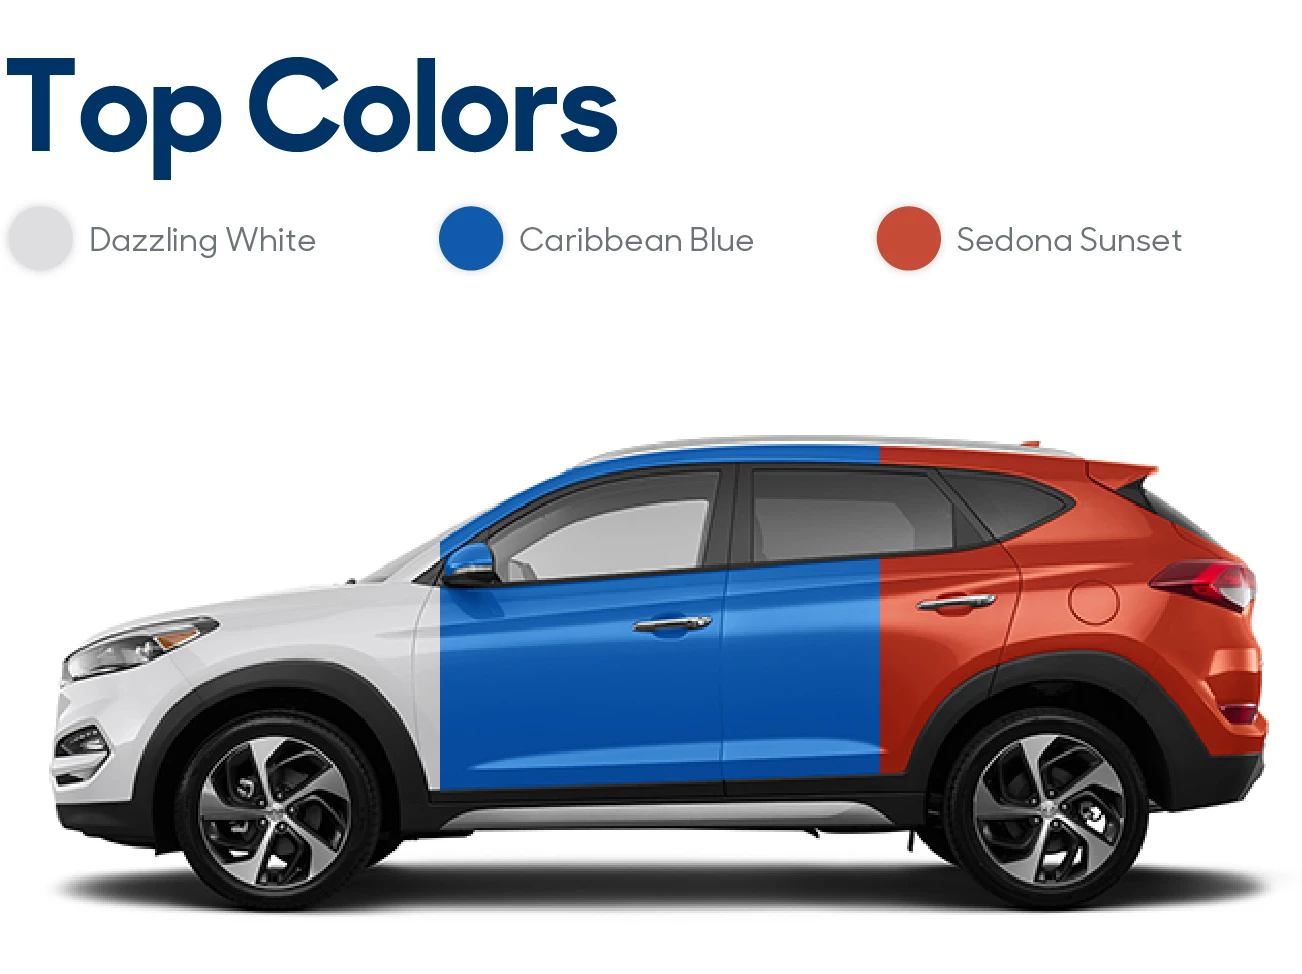 2017 Hyundai Tucson Review: Colors | CarMax